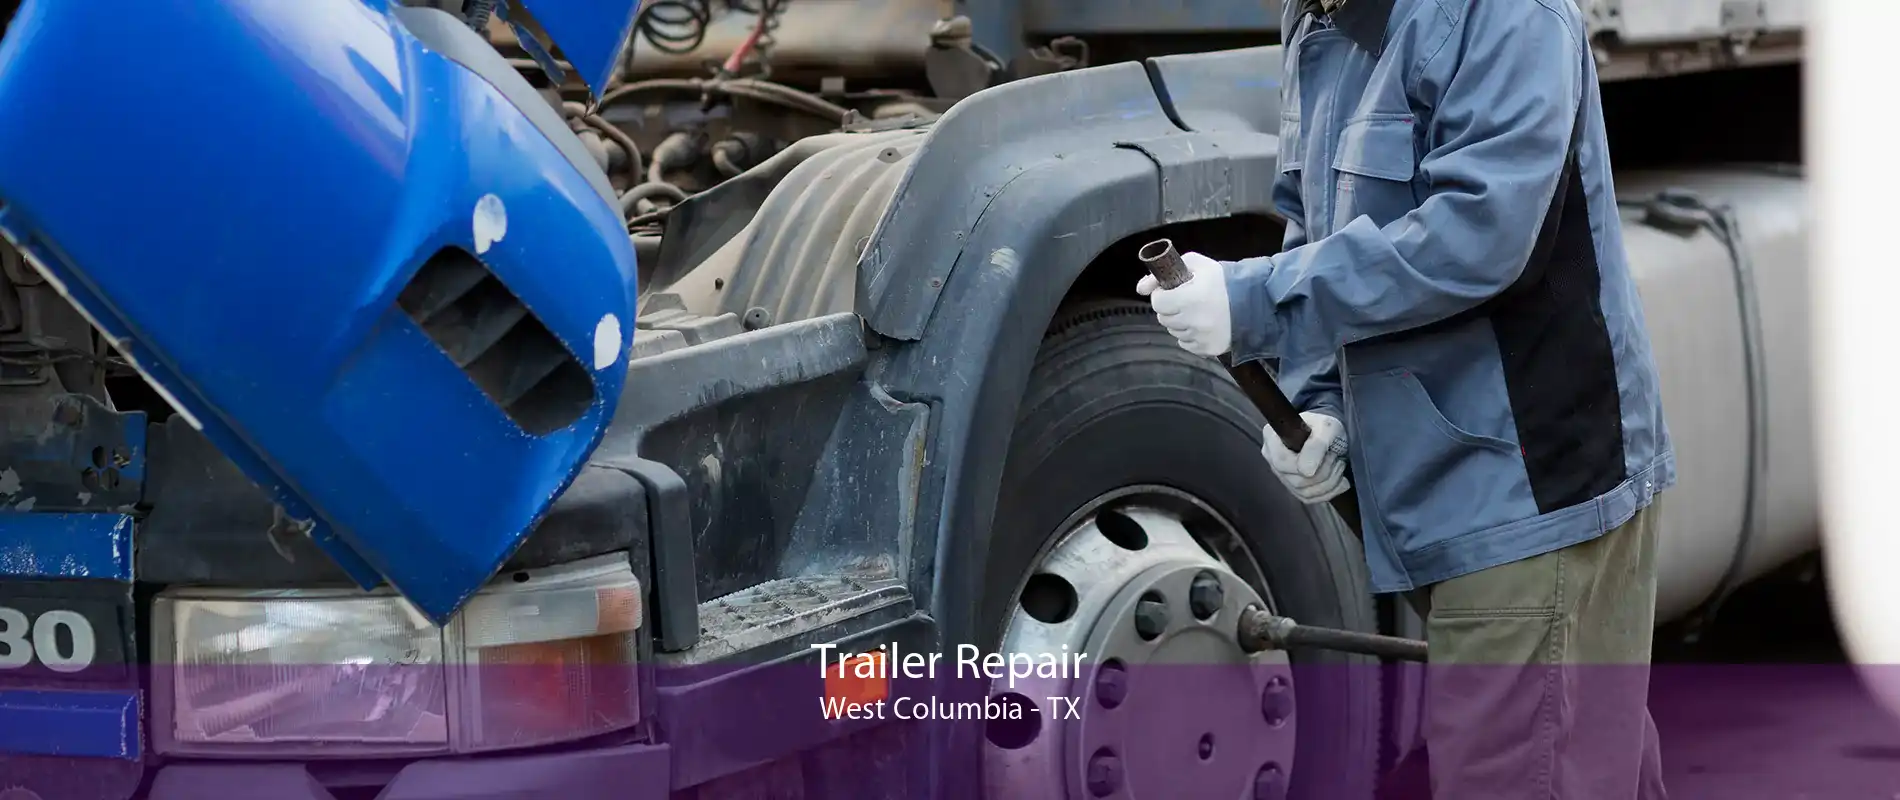 Trailer Repair West Columbia - TX